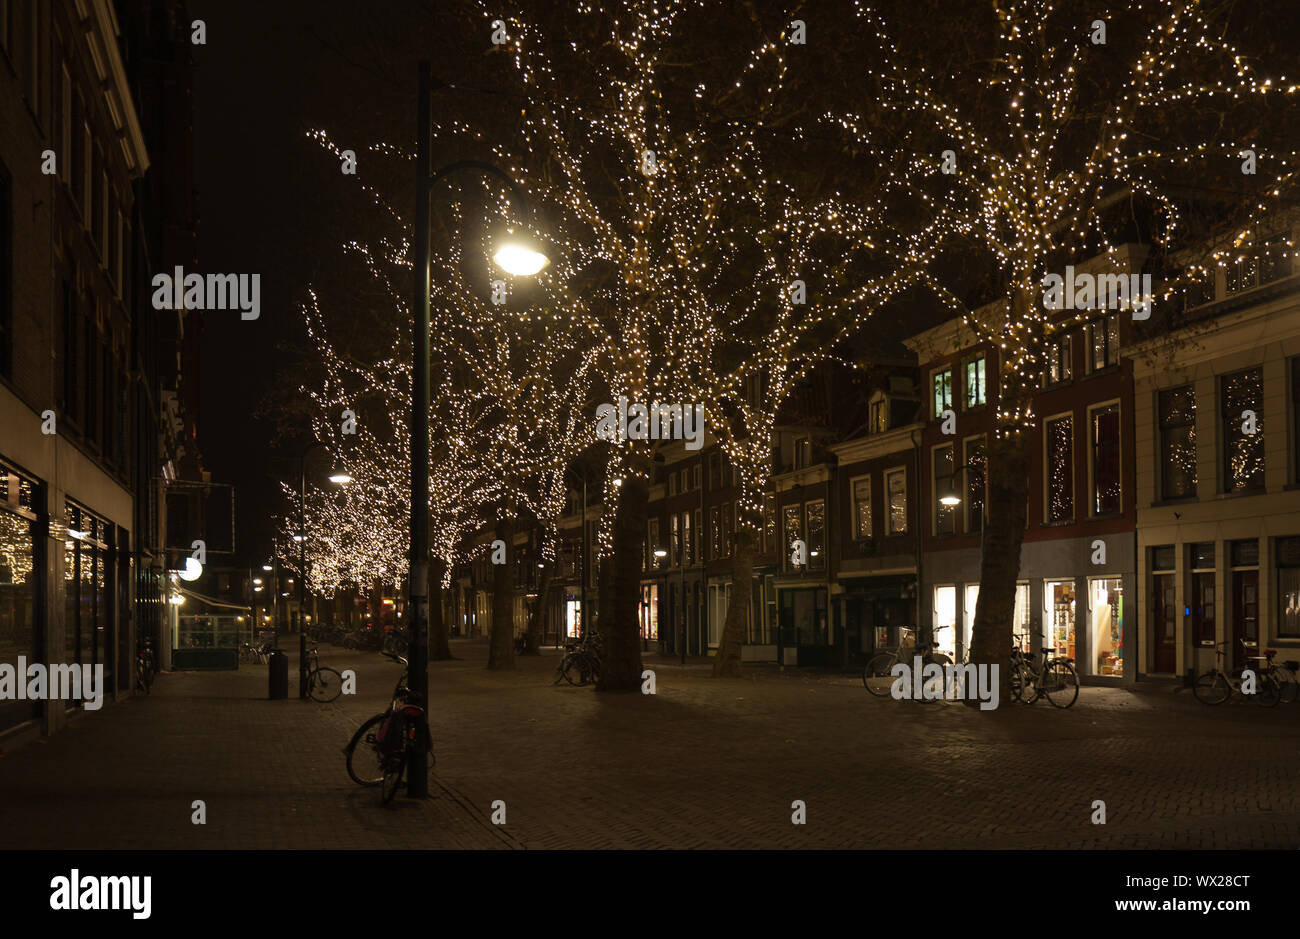 Angenehmes Licht in den Bäumen in einer holländischen Stadt im Dezember Stockfoto